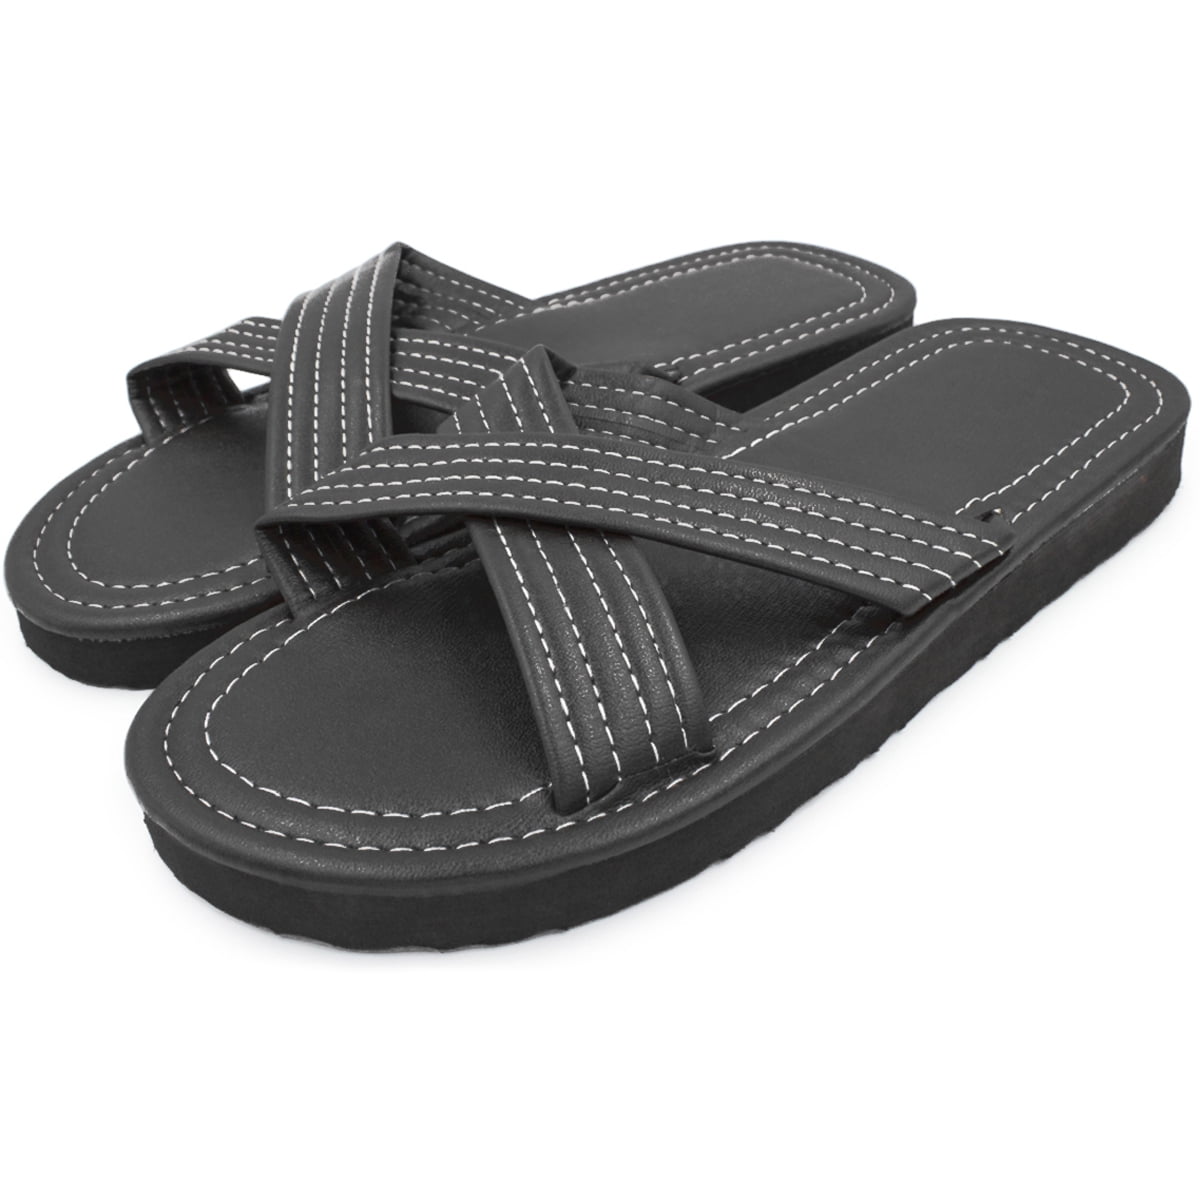 SLM Men's Flip Flop Criss-Cross Sandals Faux Leather Open Toe Shoes - image 1 of 4